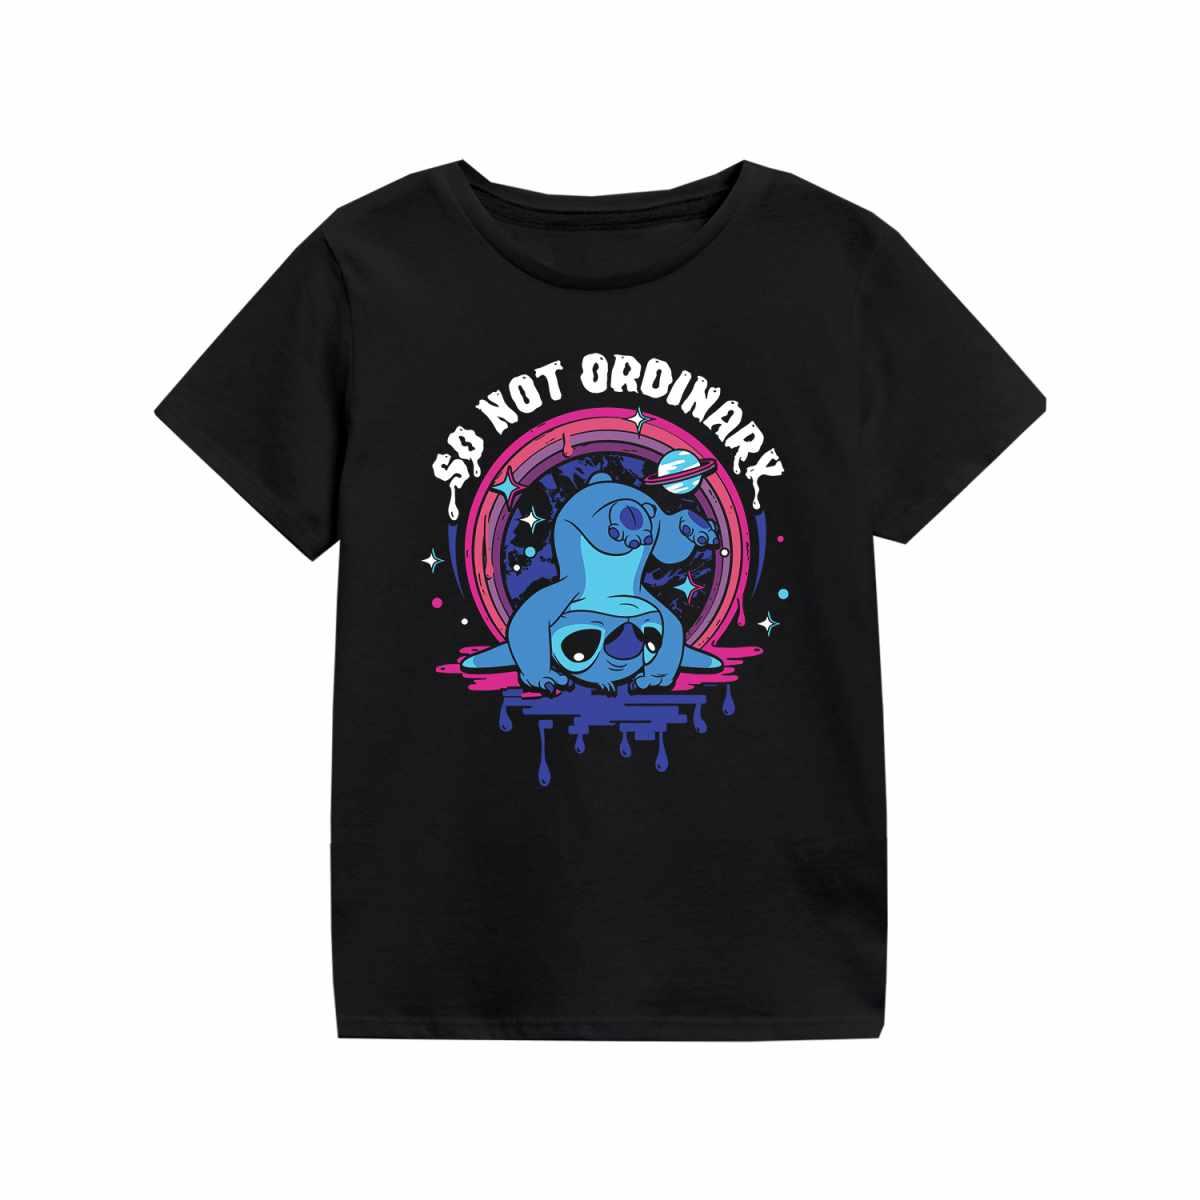 (リロ・アンド・スティッチ) Lilo & Stitch オフィシャル商品 キッズ・子供 So Not Ordinary Tシャツ スティッチ 半袖 トップス 【海外通販】画像